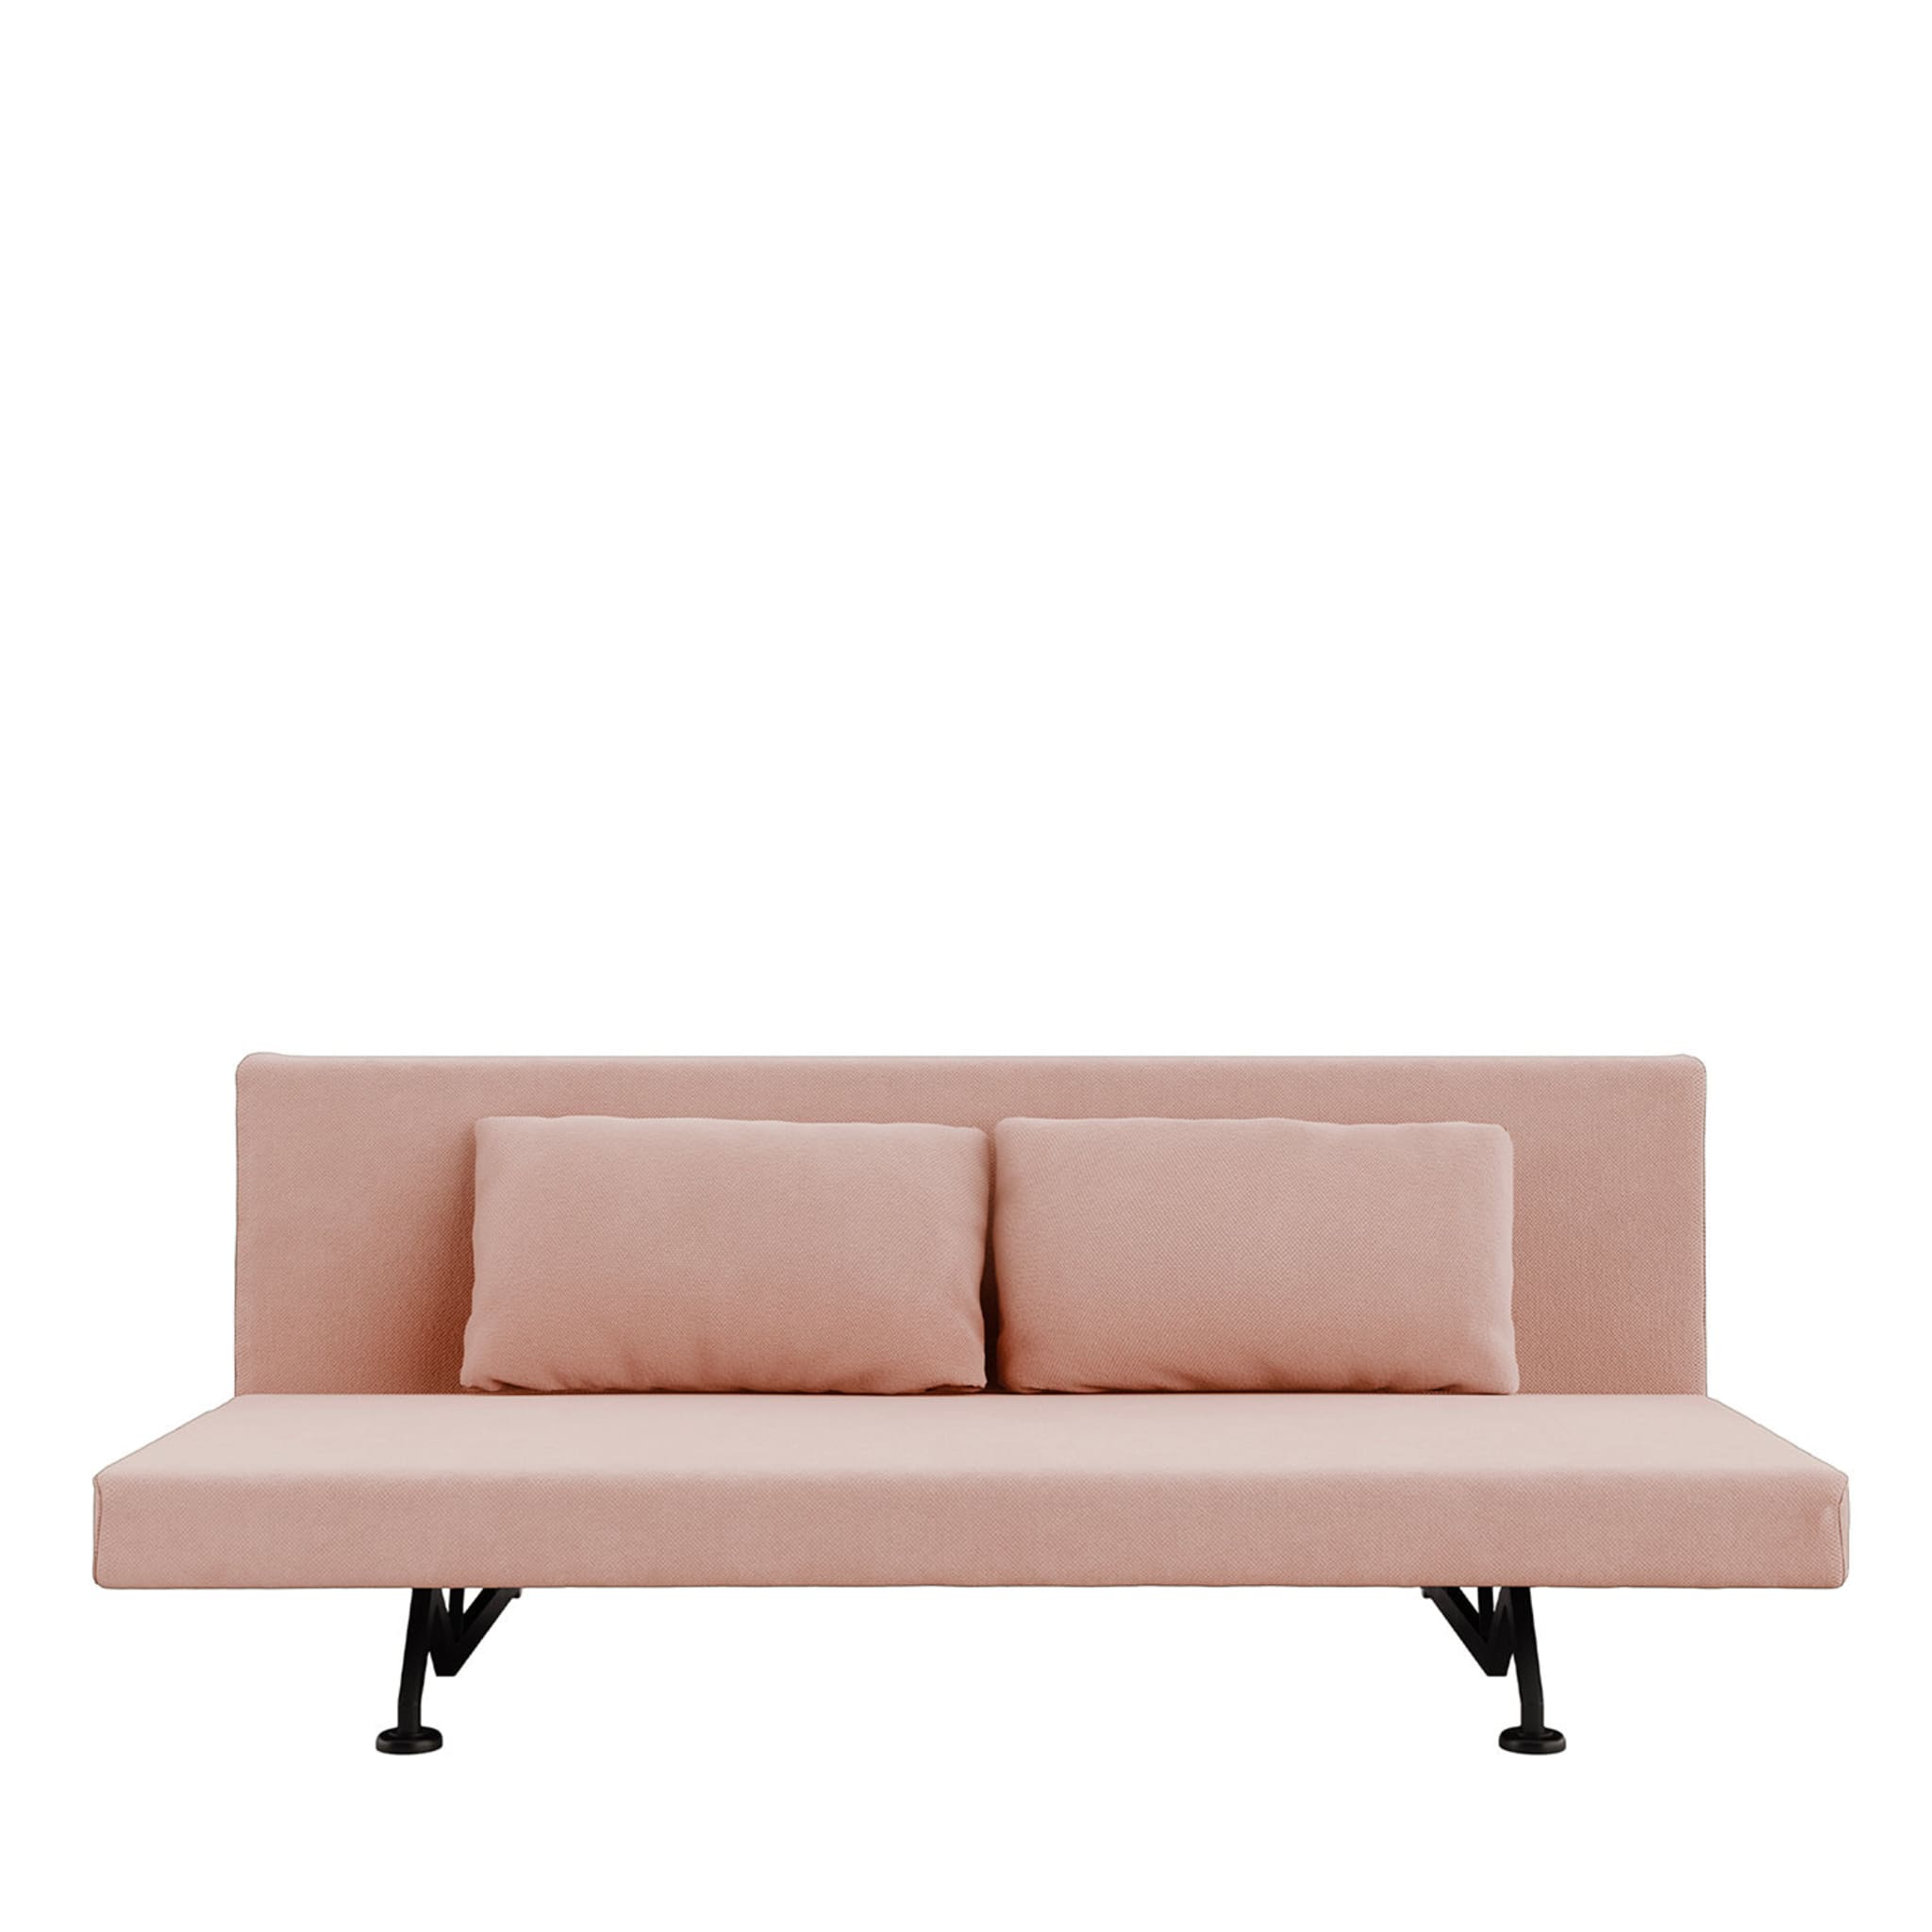 Sliding Pink Sofa Bed - Main view